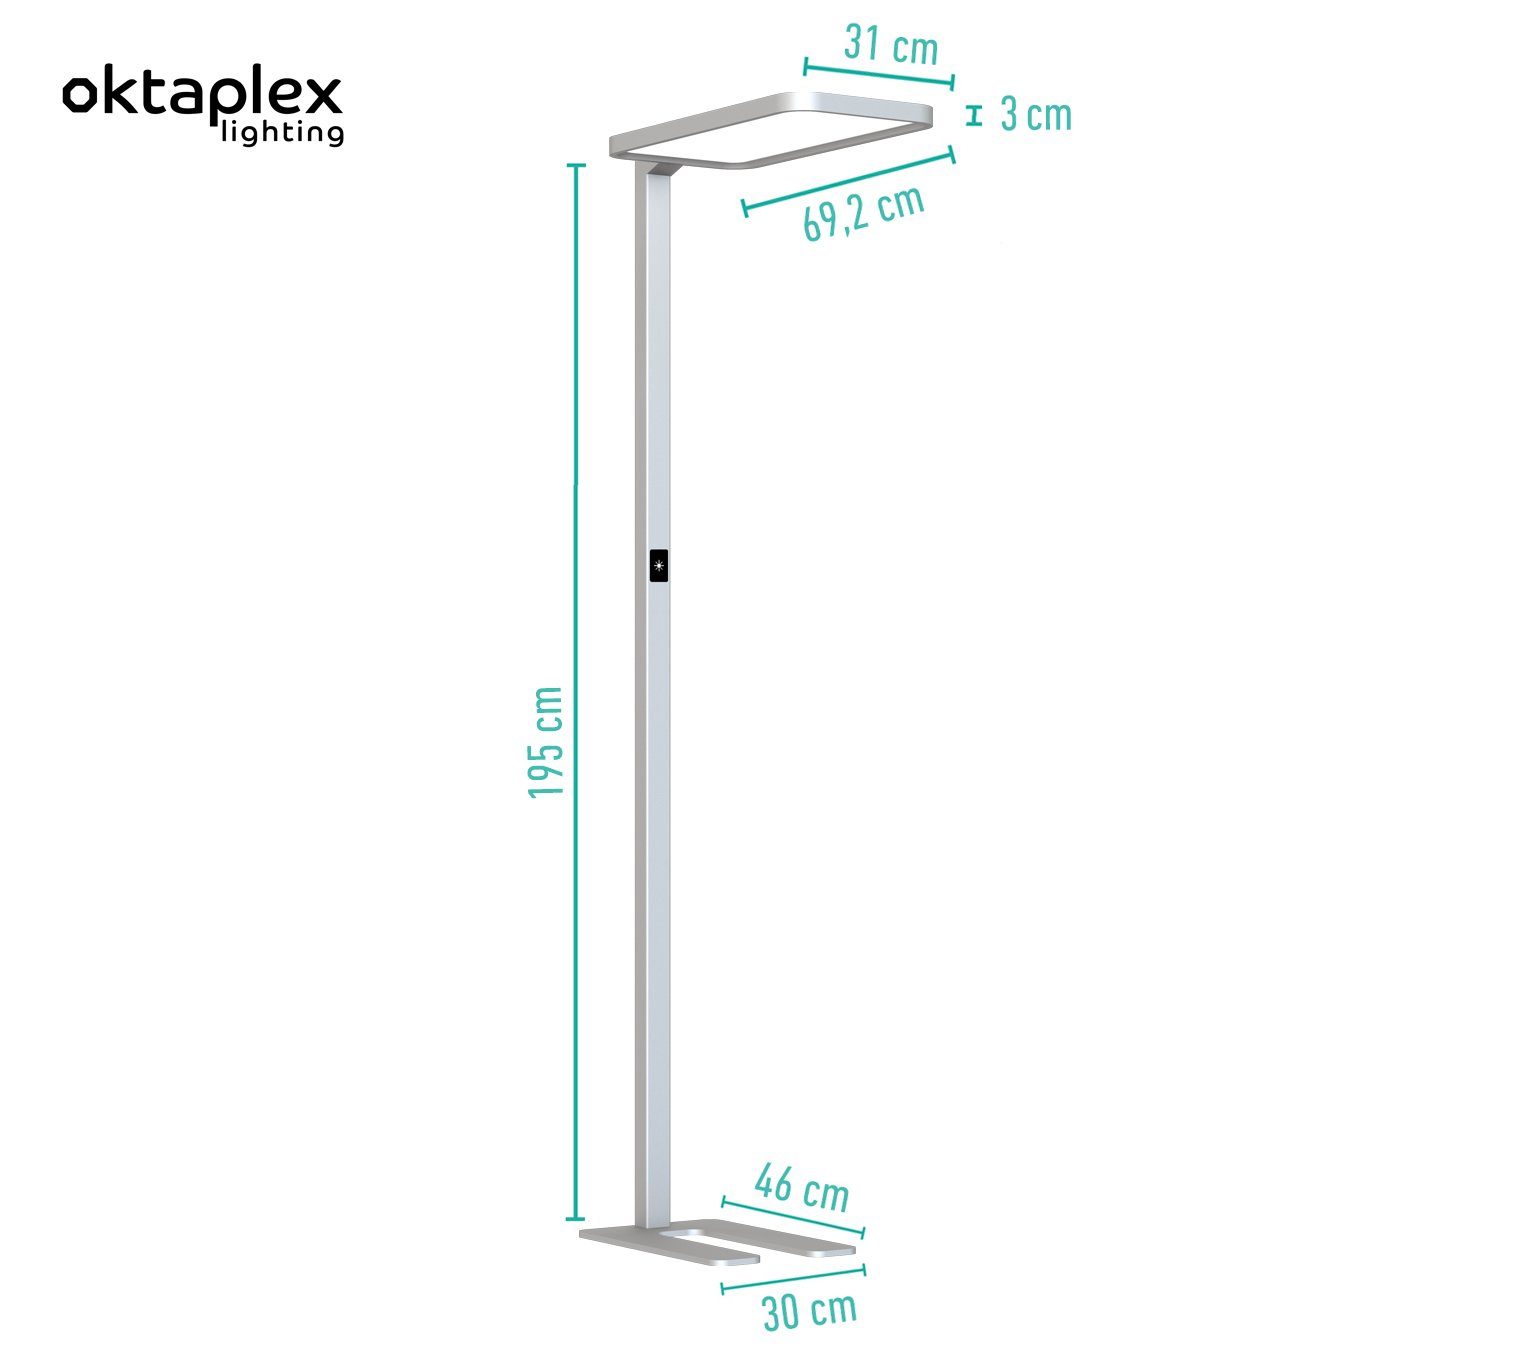 Oktaplex lighting LED Alen, Tageslichtsensor LED LED verbaut, Dimmbar, Bewegungsmelder fest silber neutralweiß, mit Stehlampe Stehlampe und